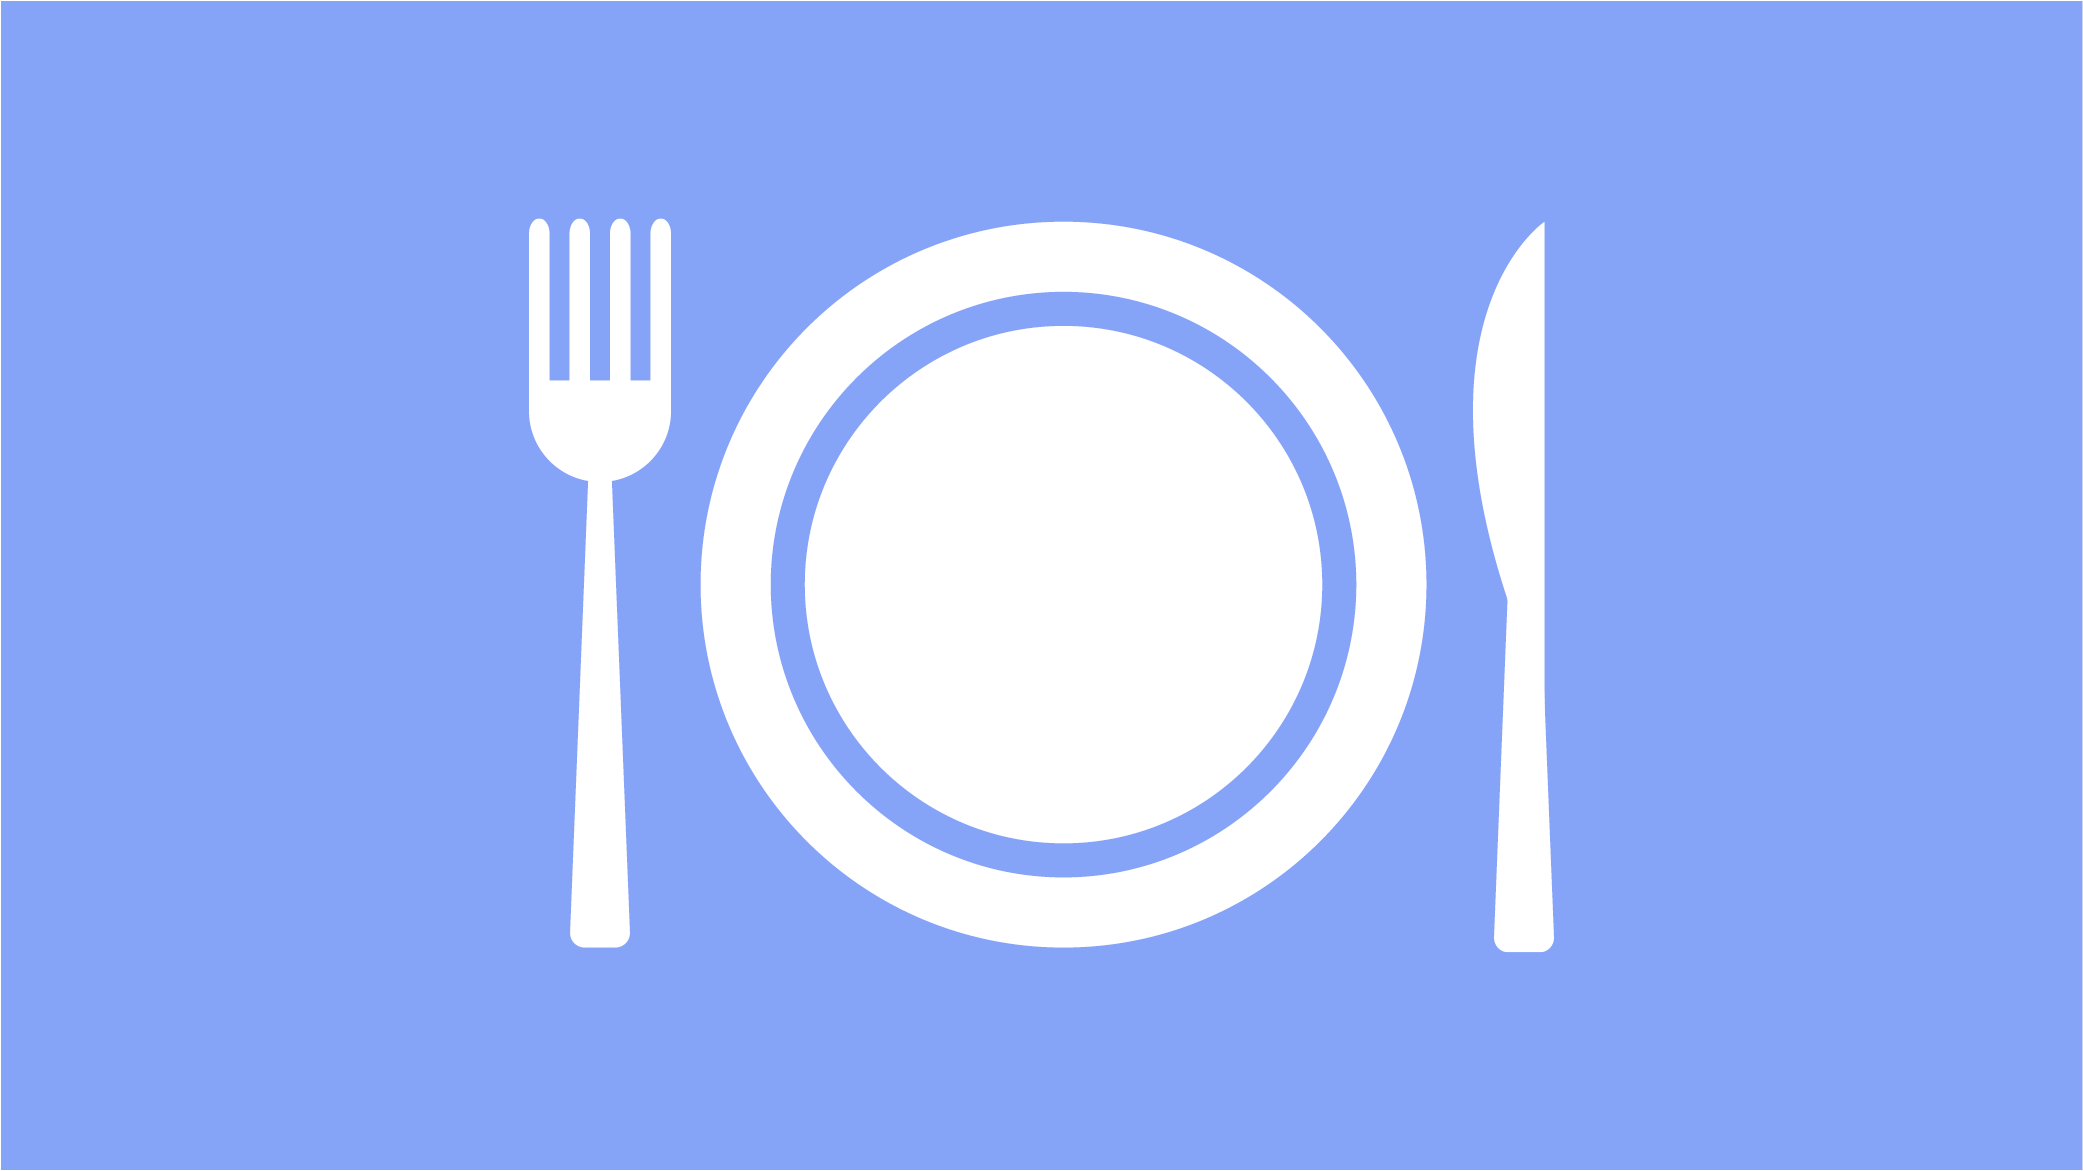 Illustrasjon med fat, kniv og gaffel hvitt piktogram mot lys blå bakgrunn